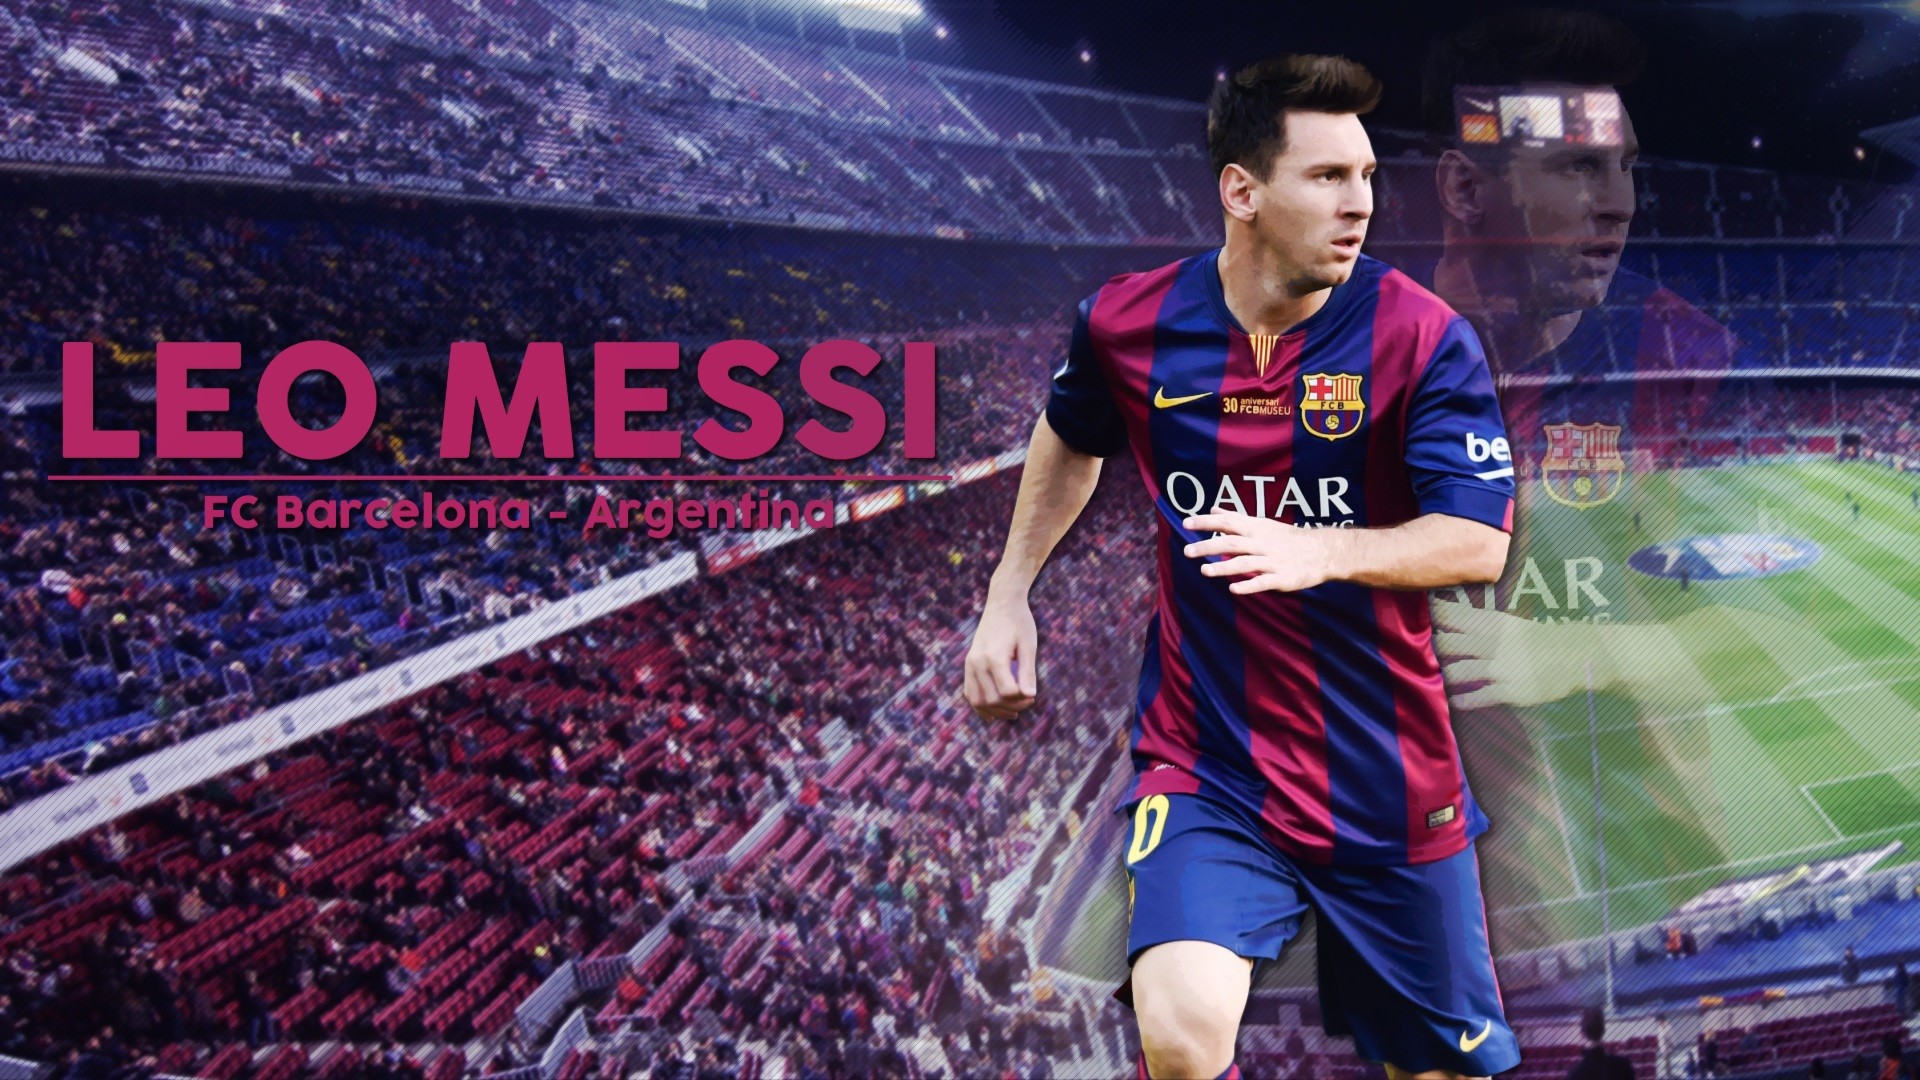 Messi FC Barcelona Desktop backgrounds